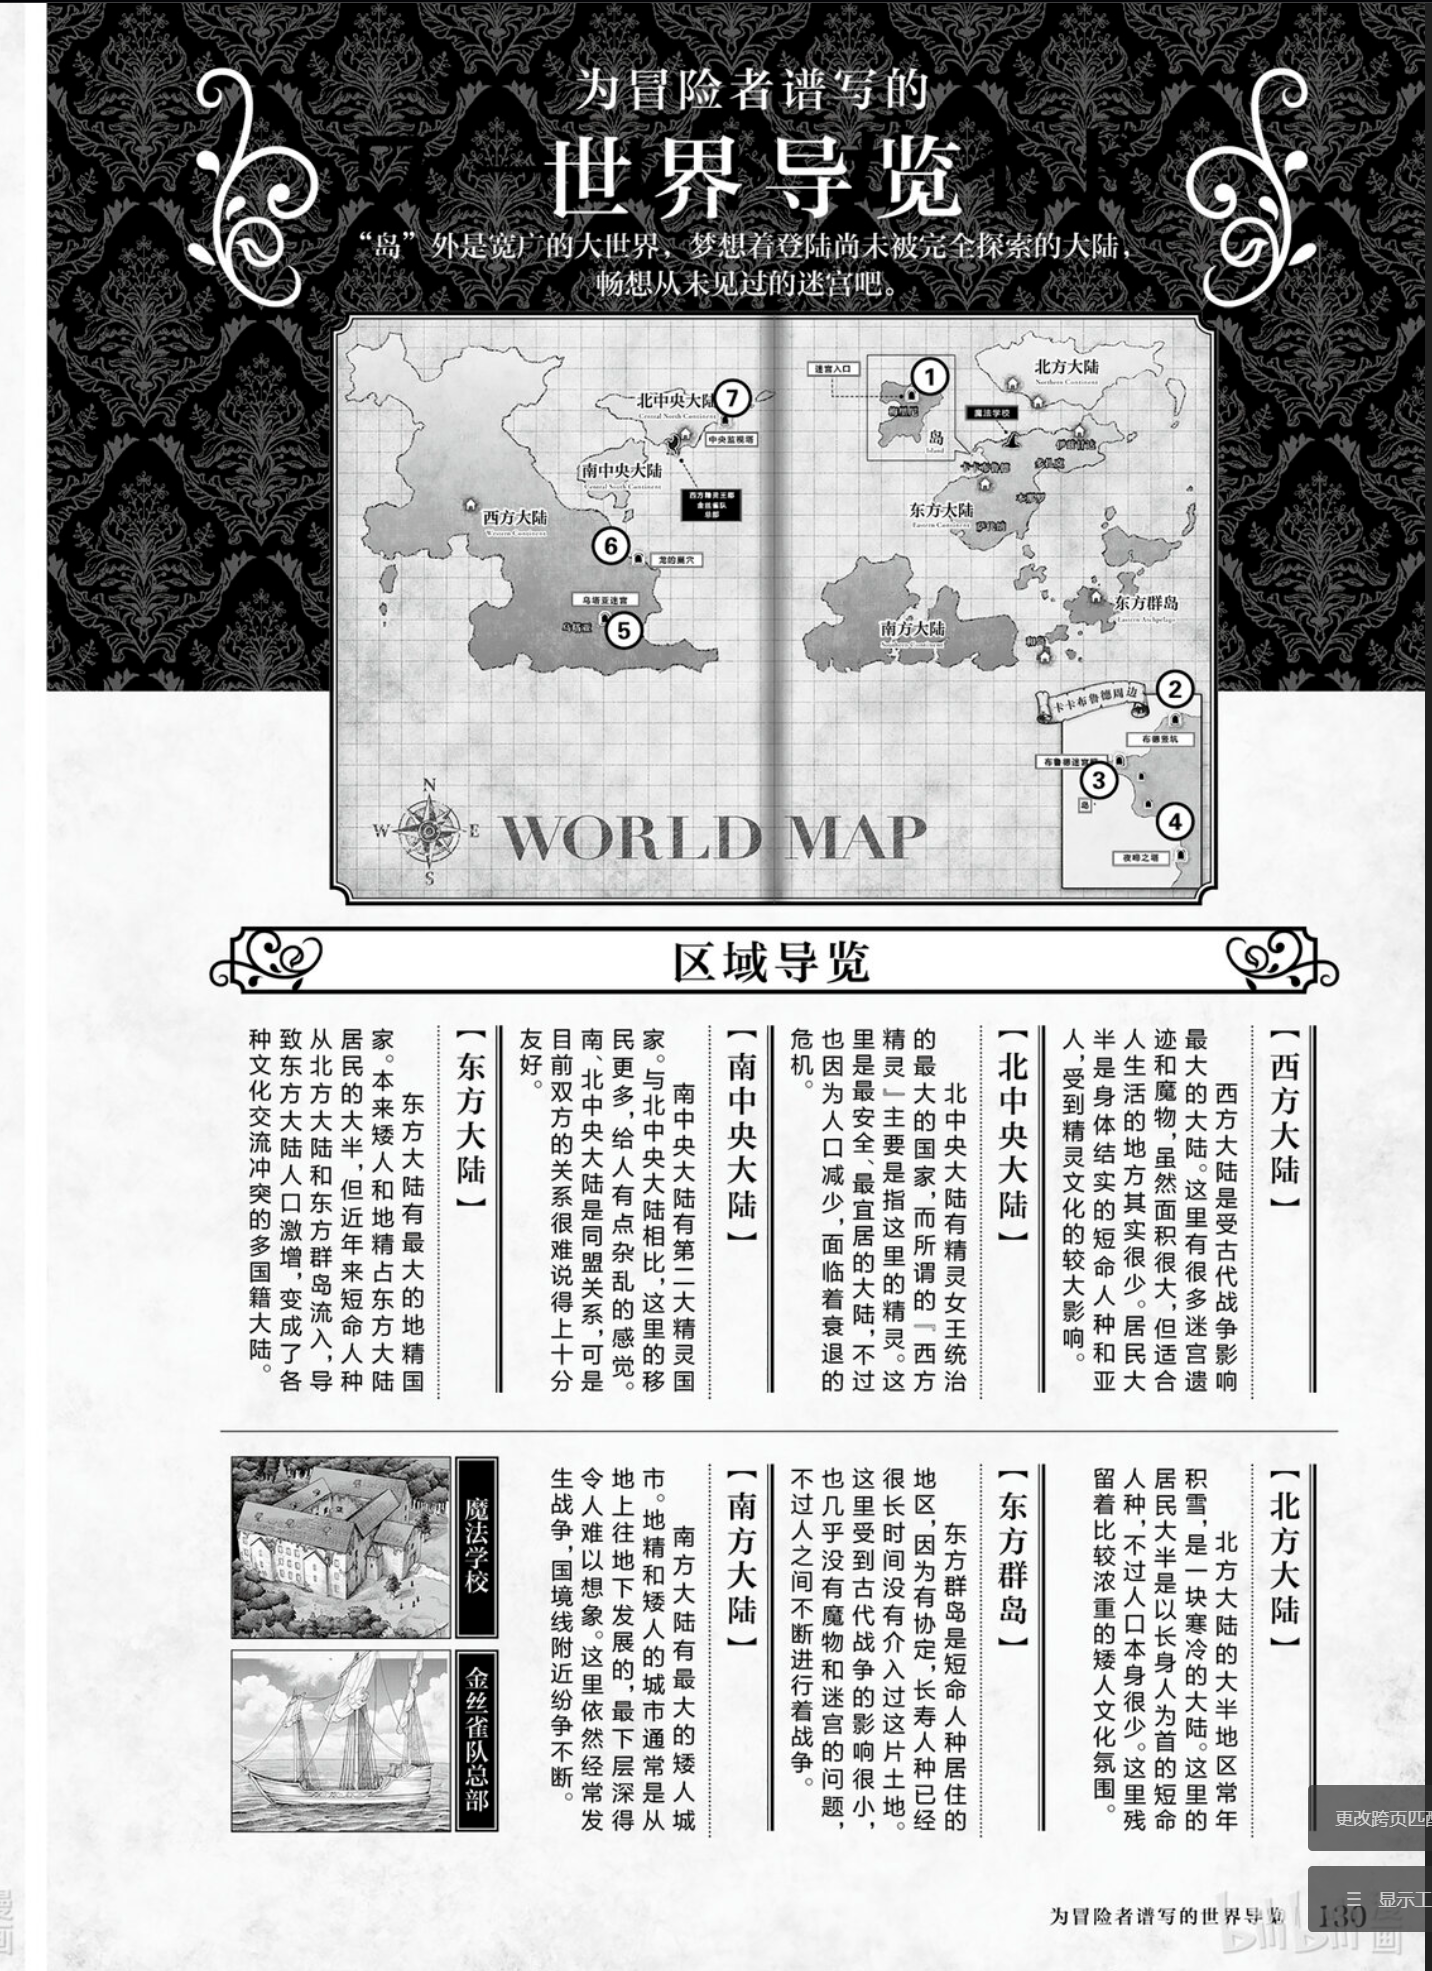 《迷宮飯》系列的世界地圖，僅以此為例，想表達在此階段可以開始考慮世界各地的狀態，比如是處於局勢緊張的狀態、或是交戰的狀態等等